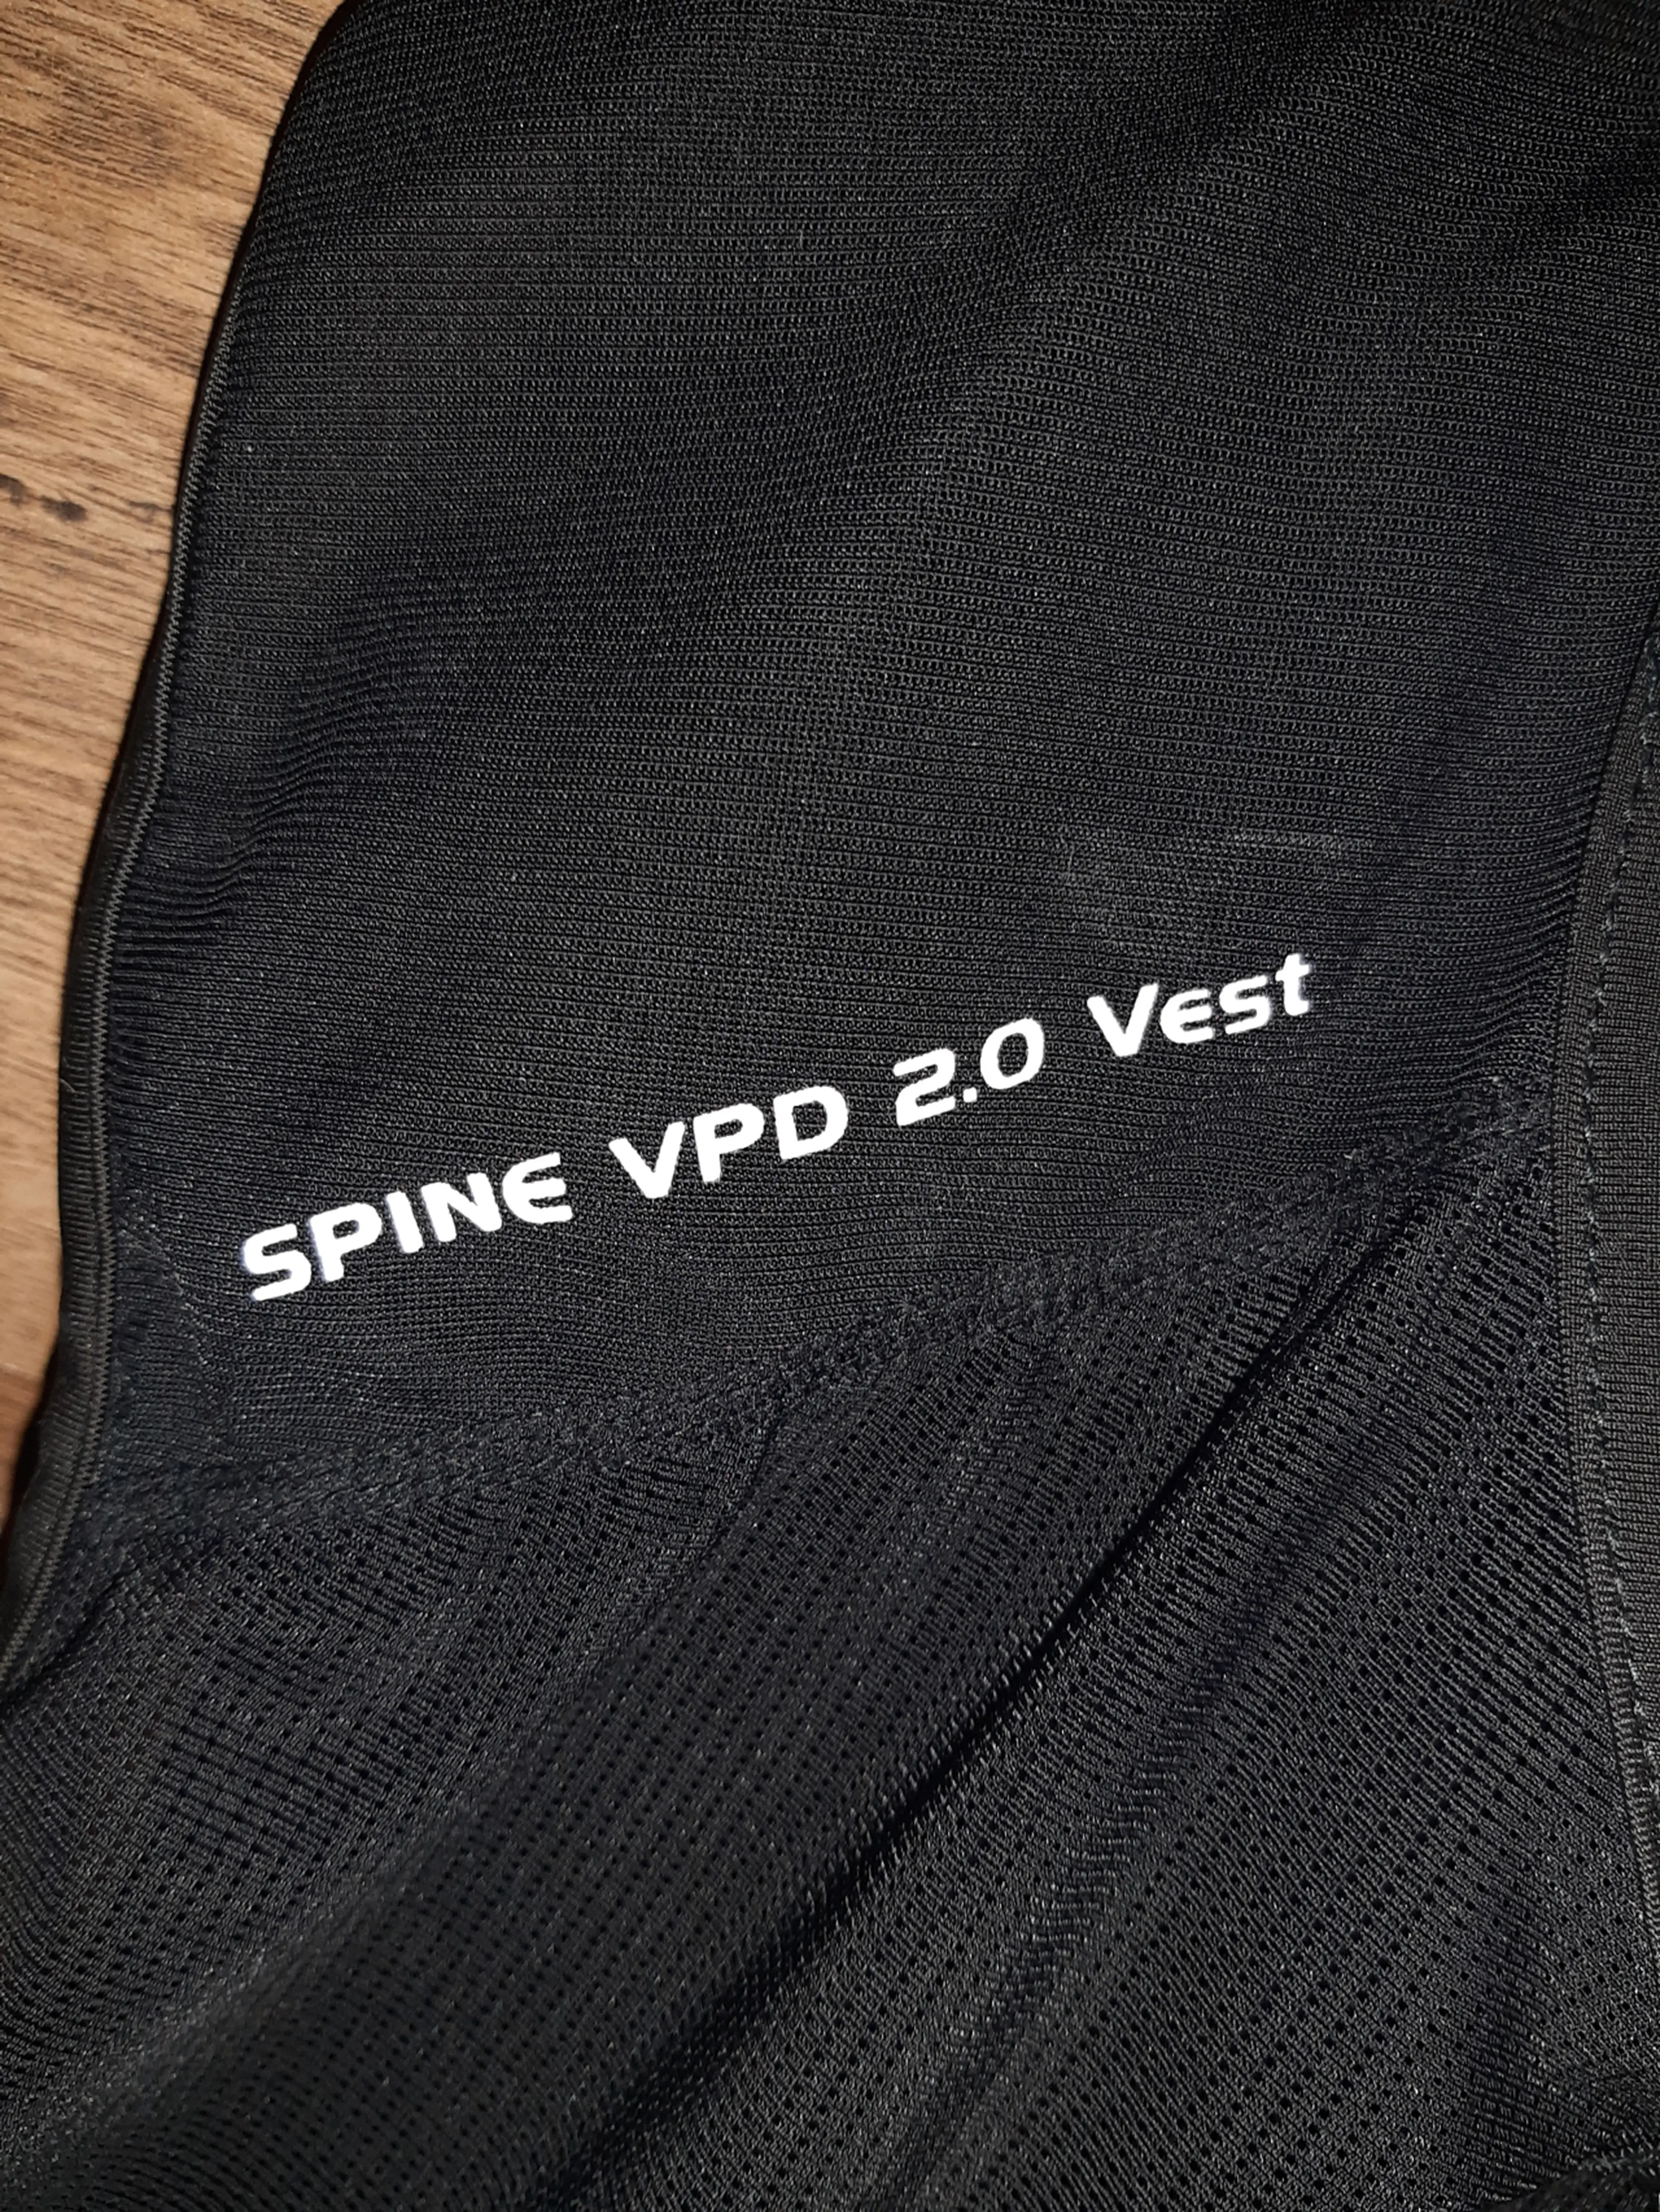 3. Armura/Back Guard Poc Spine VPD 2.0 Vest